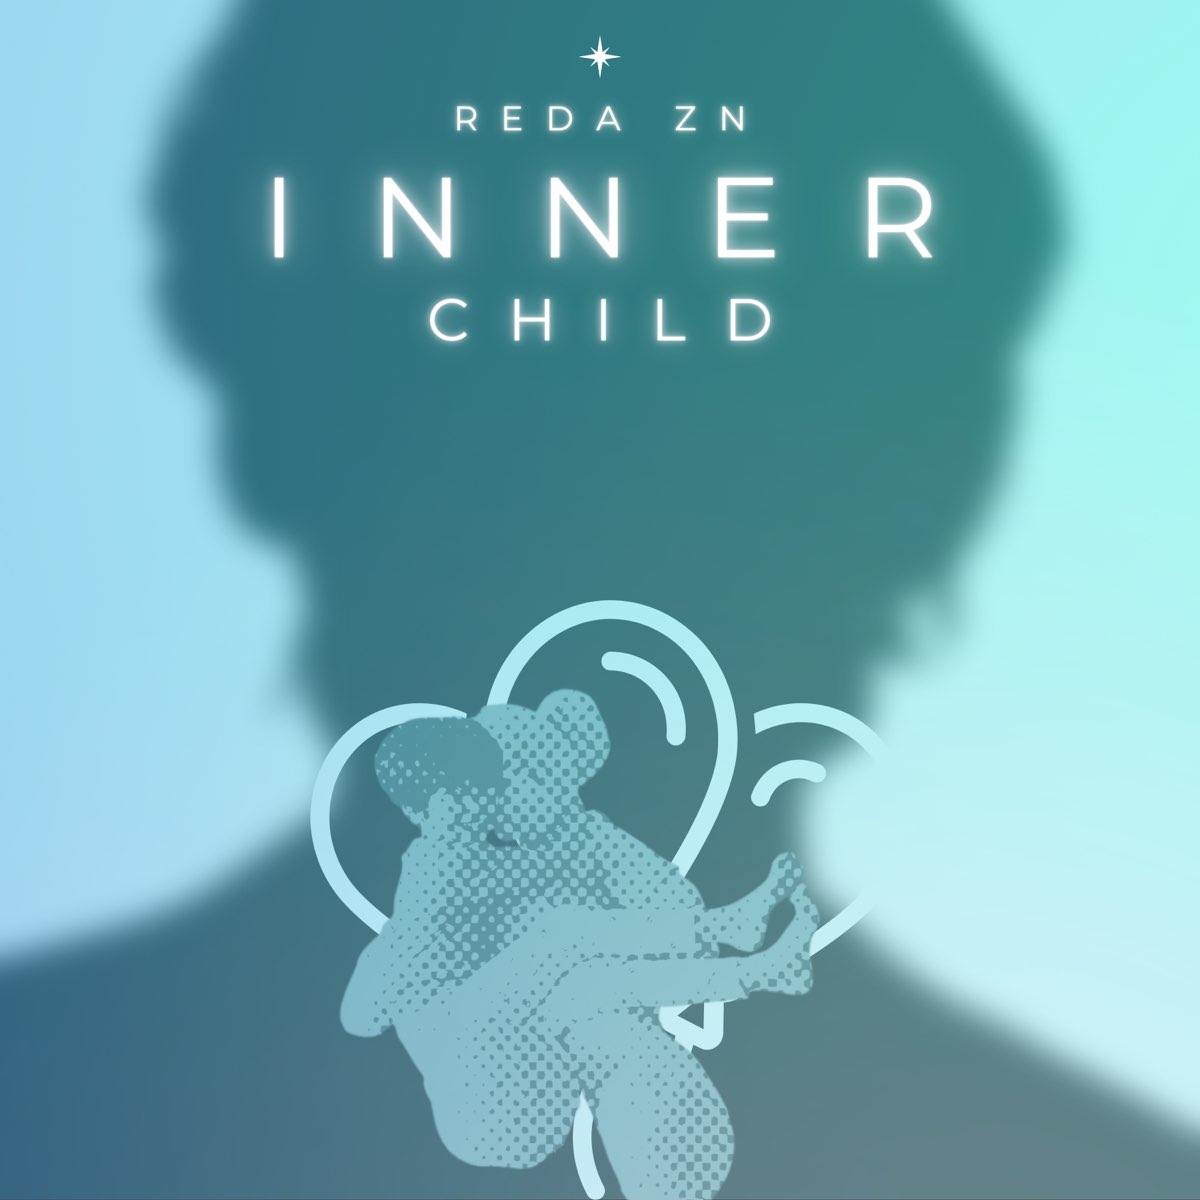 Bts inner. BTS Inner child album.